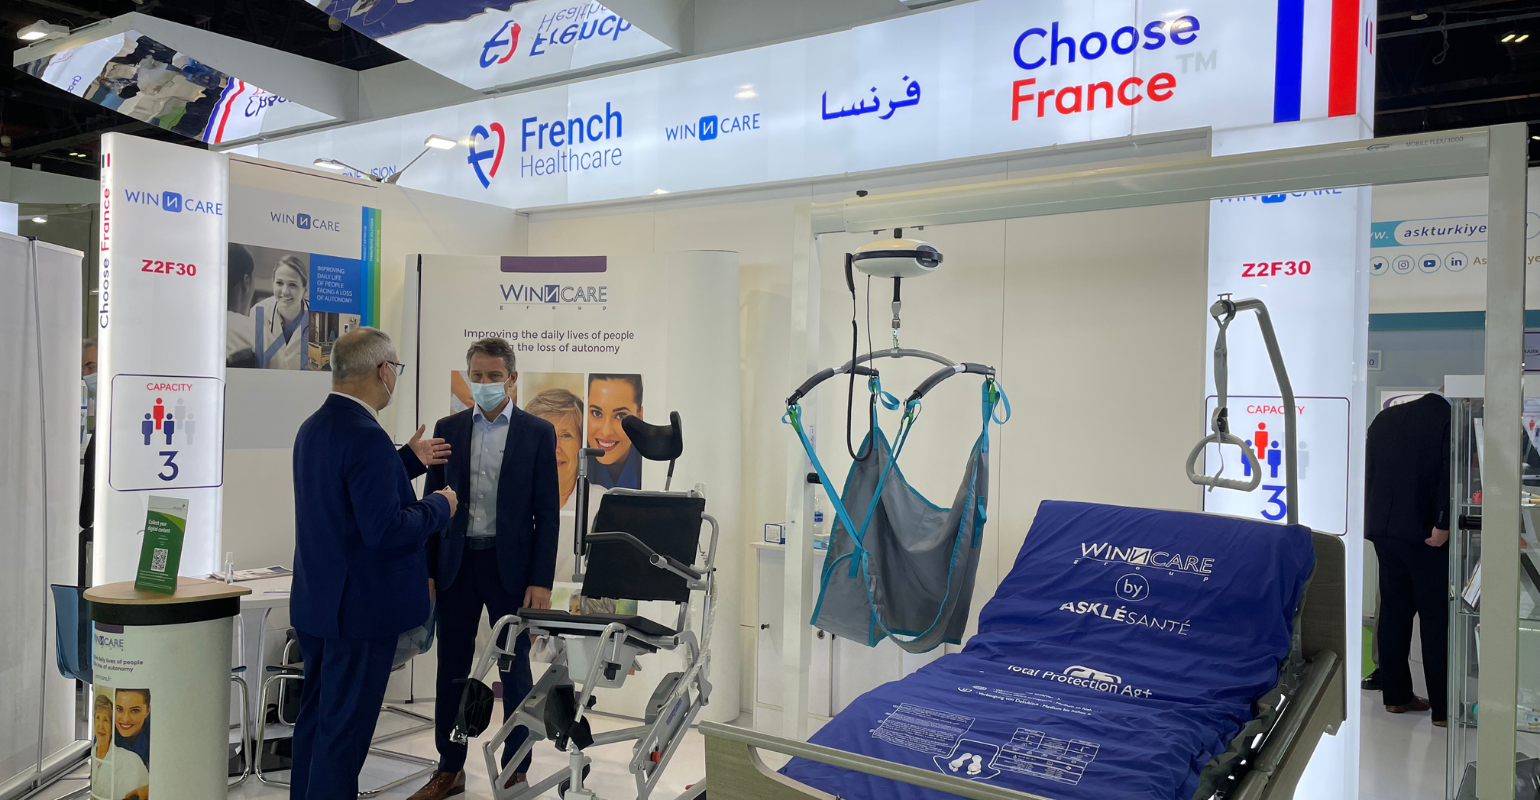 فرنسا تعرض حلولاً ثورية للرعاية الصحية في معرض الصحة العربي